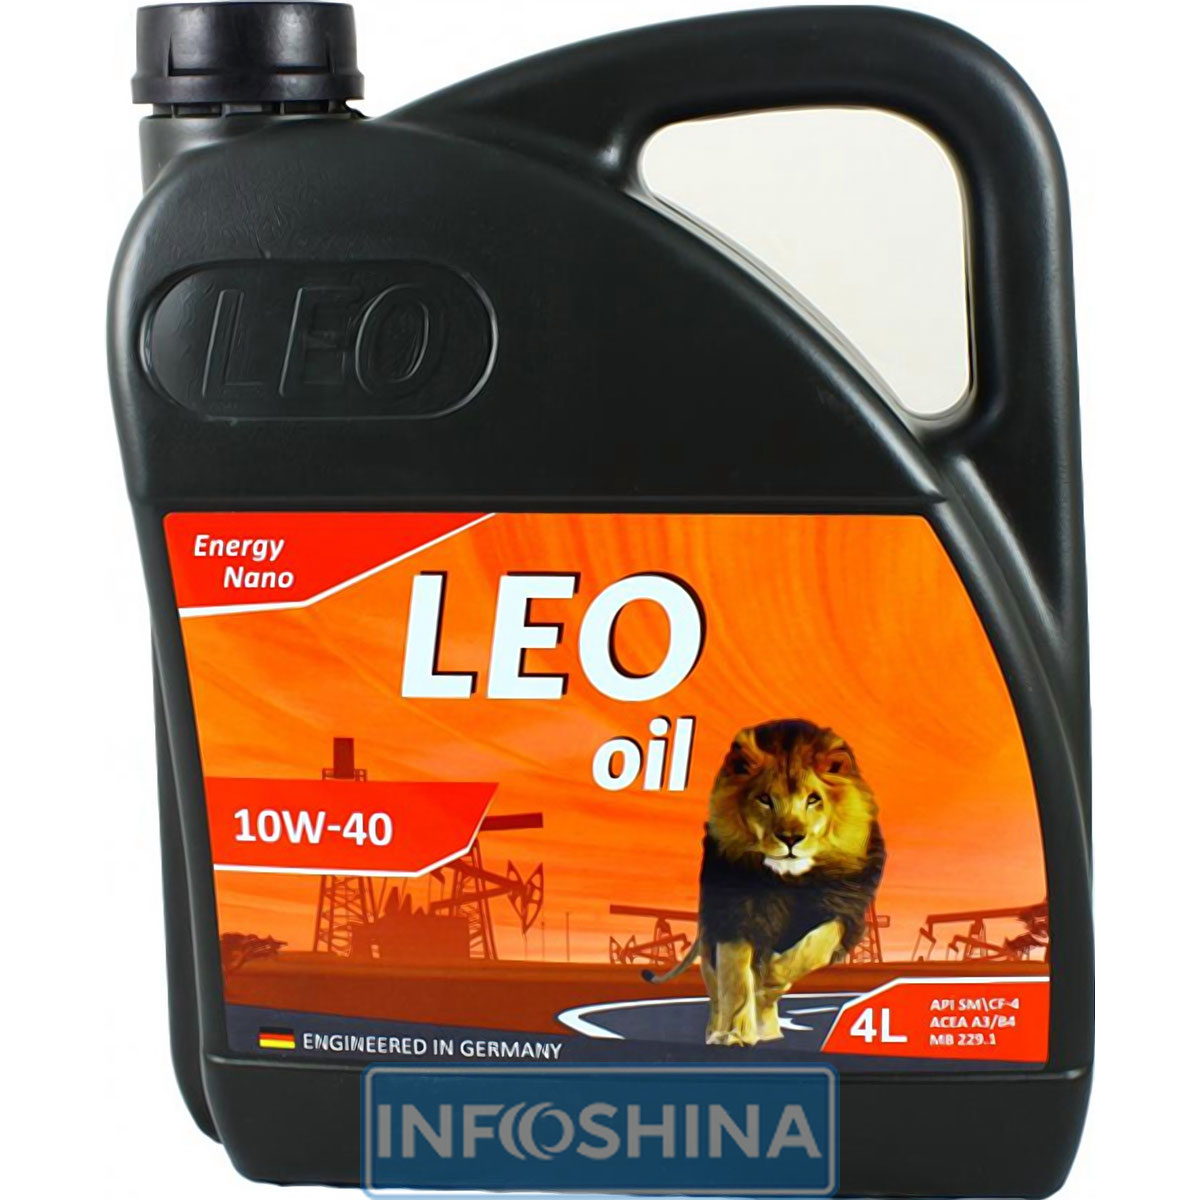 Купить масло LEO OIL Energy Nano